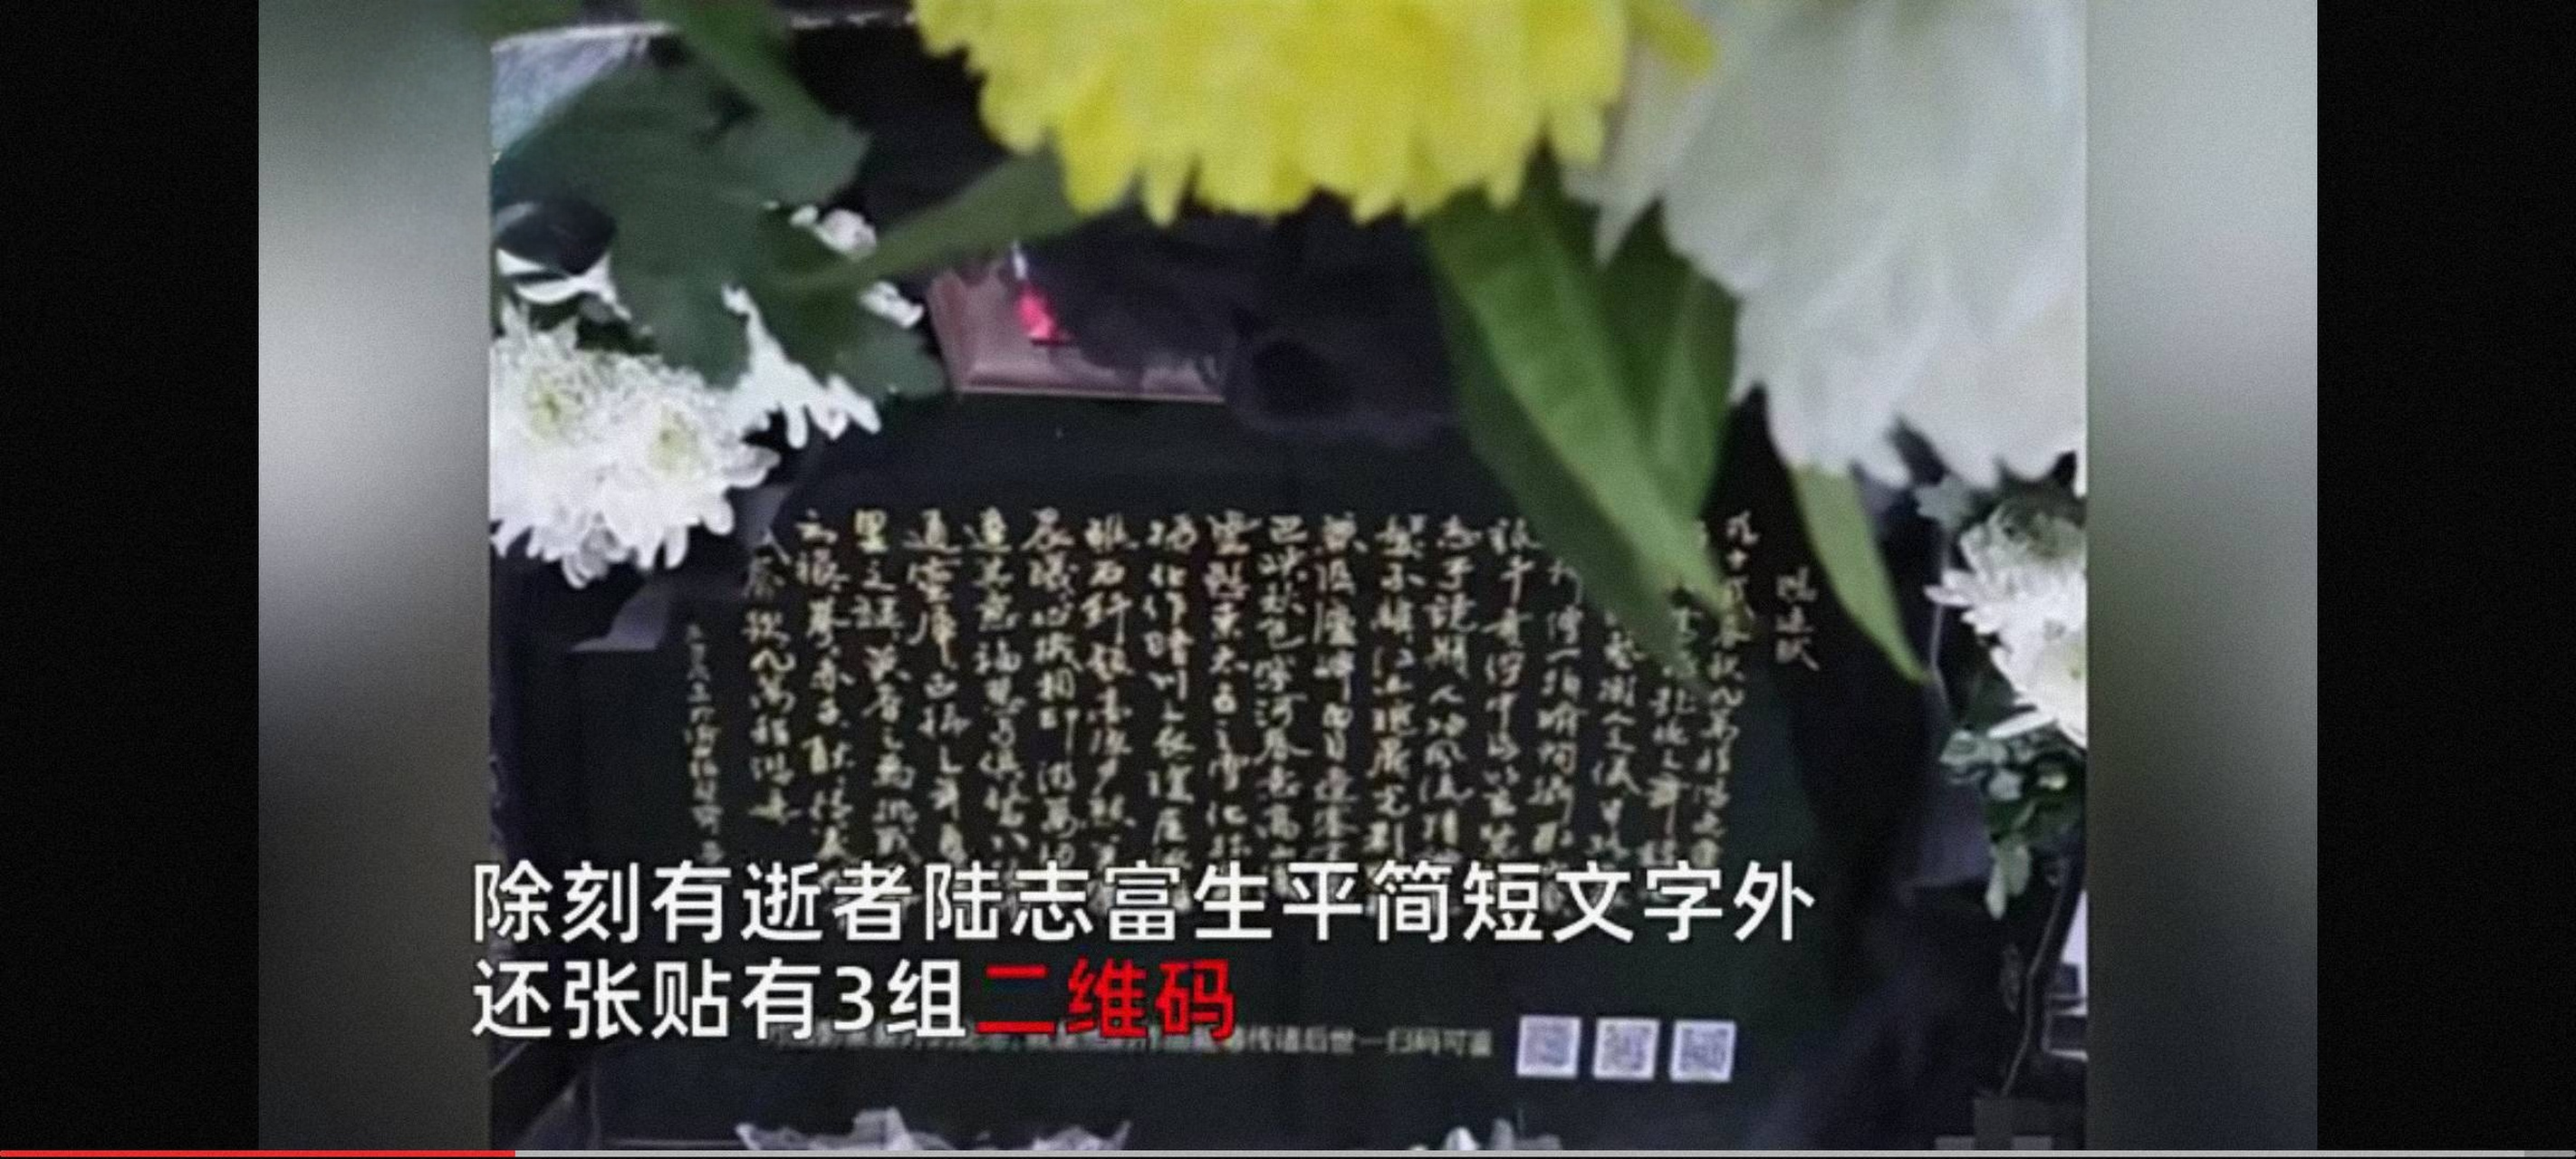 在重庆漫山遍野的龙潭山陵园内,有一处新立的墓碑引起了人们的注意